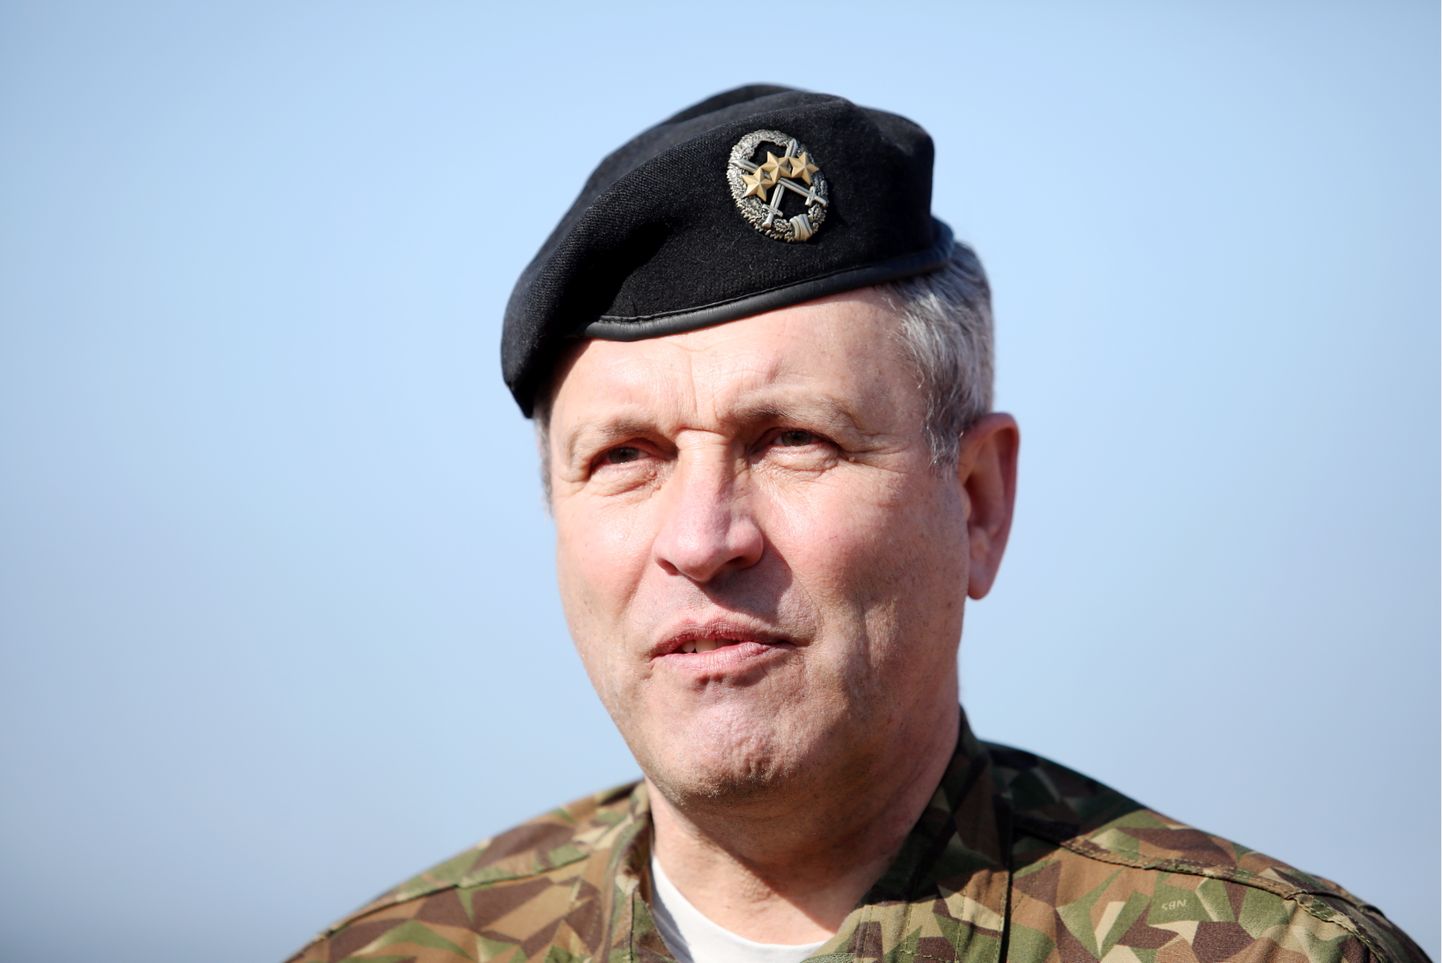 Nacionālo bruņoto spēku komandieris ģenerālleitnants Leonīds Kalniņš starptautisko militāro mācību "Kristāla bulta 2021" laikā Ādažu poligonā.